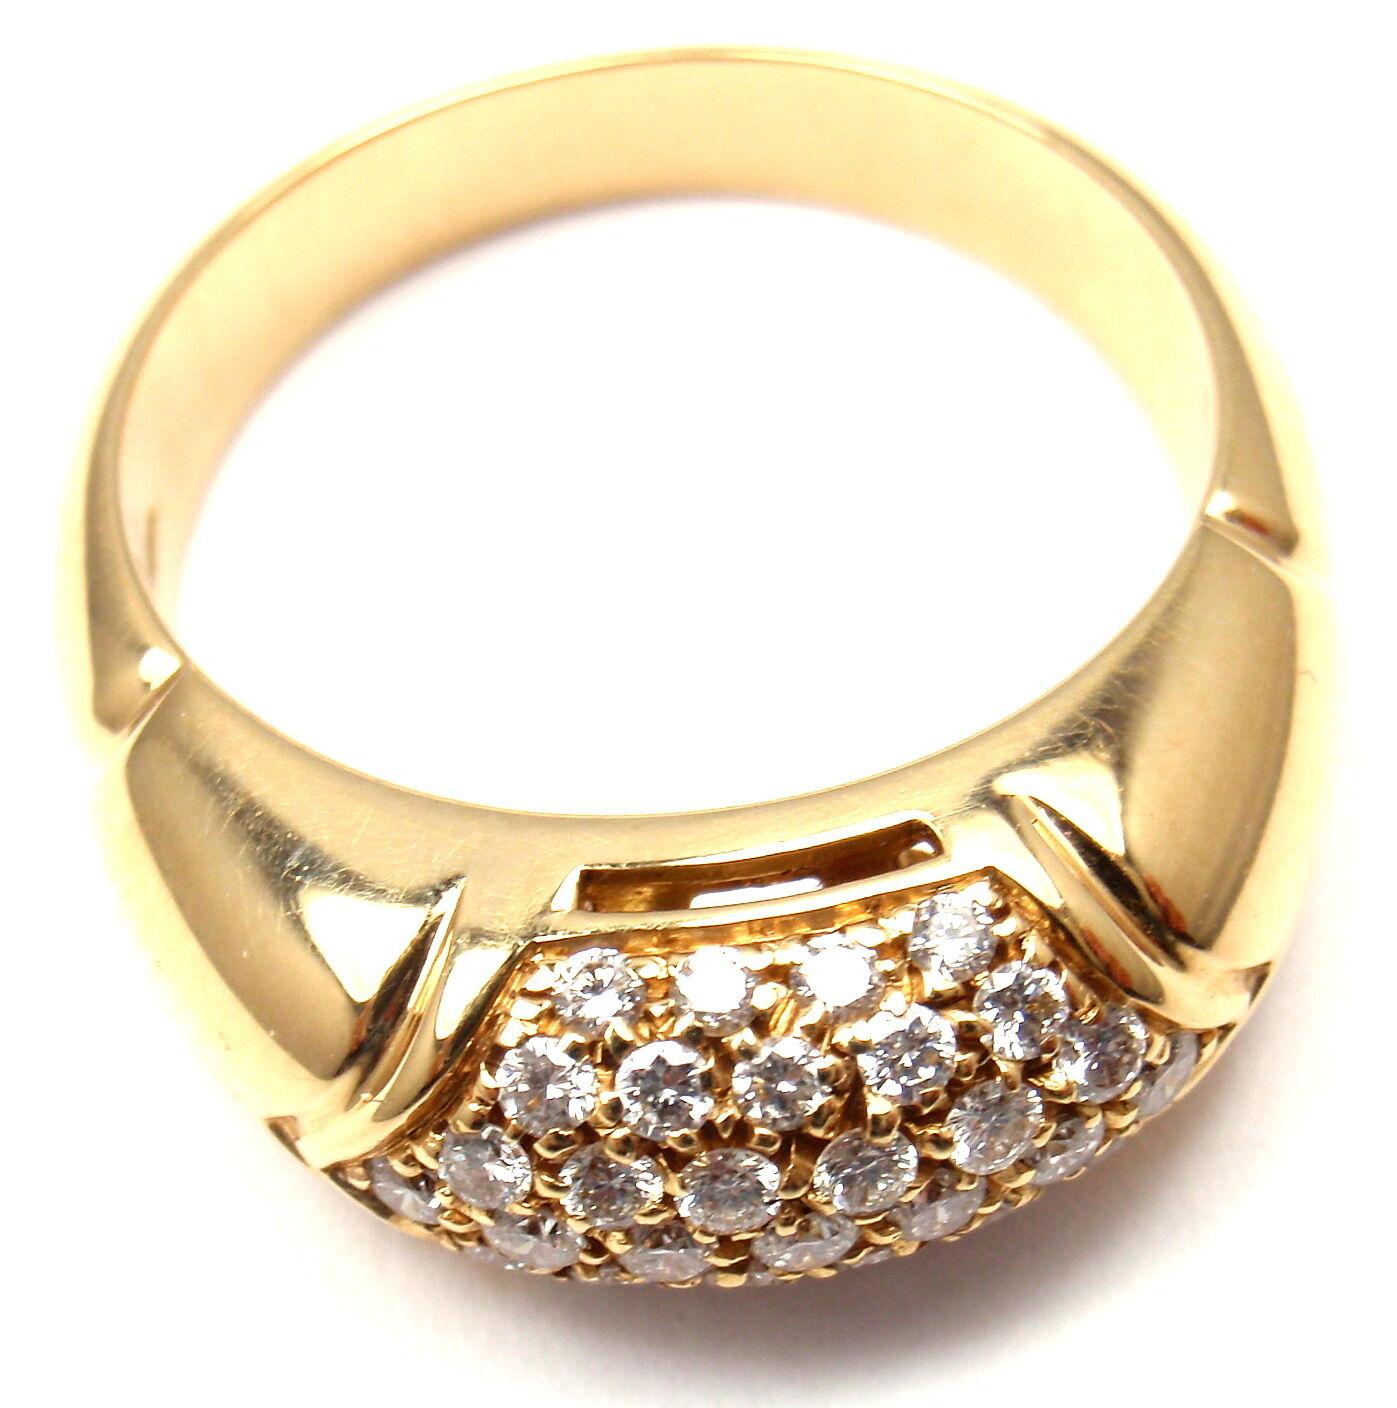 Brilliant Cut Bulgari Bvlgari Diamond Yellow Gold Band Ring